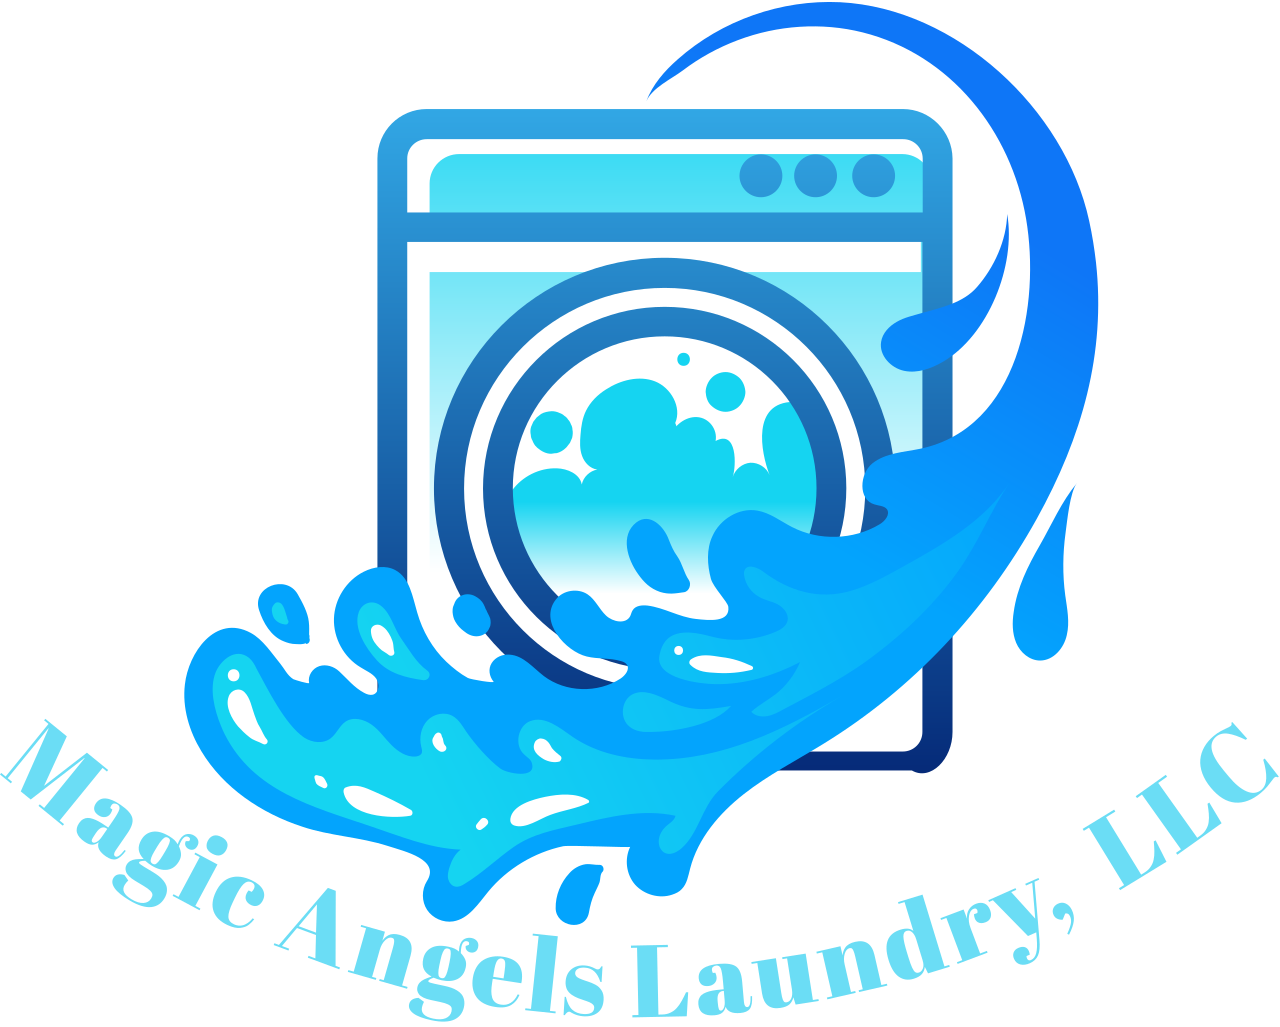 Magic Angels Laundry,  LLC's logo